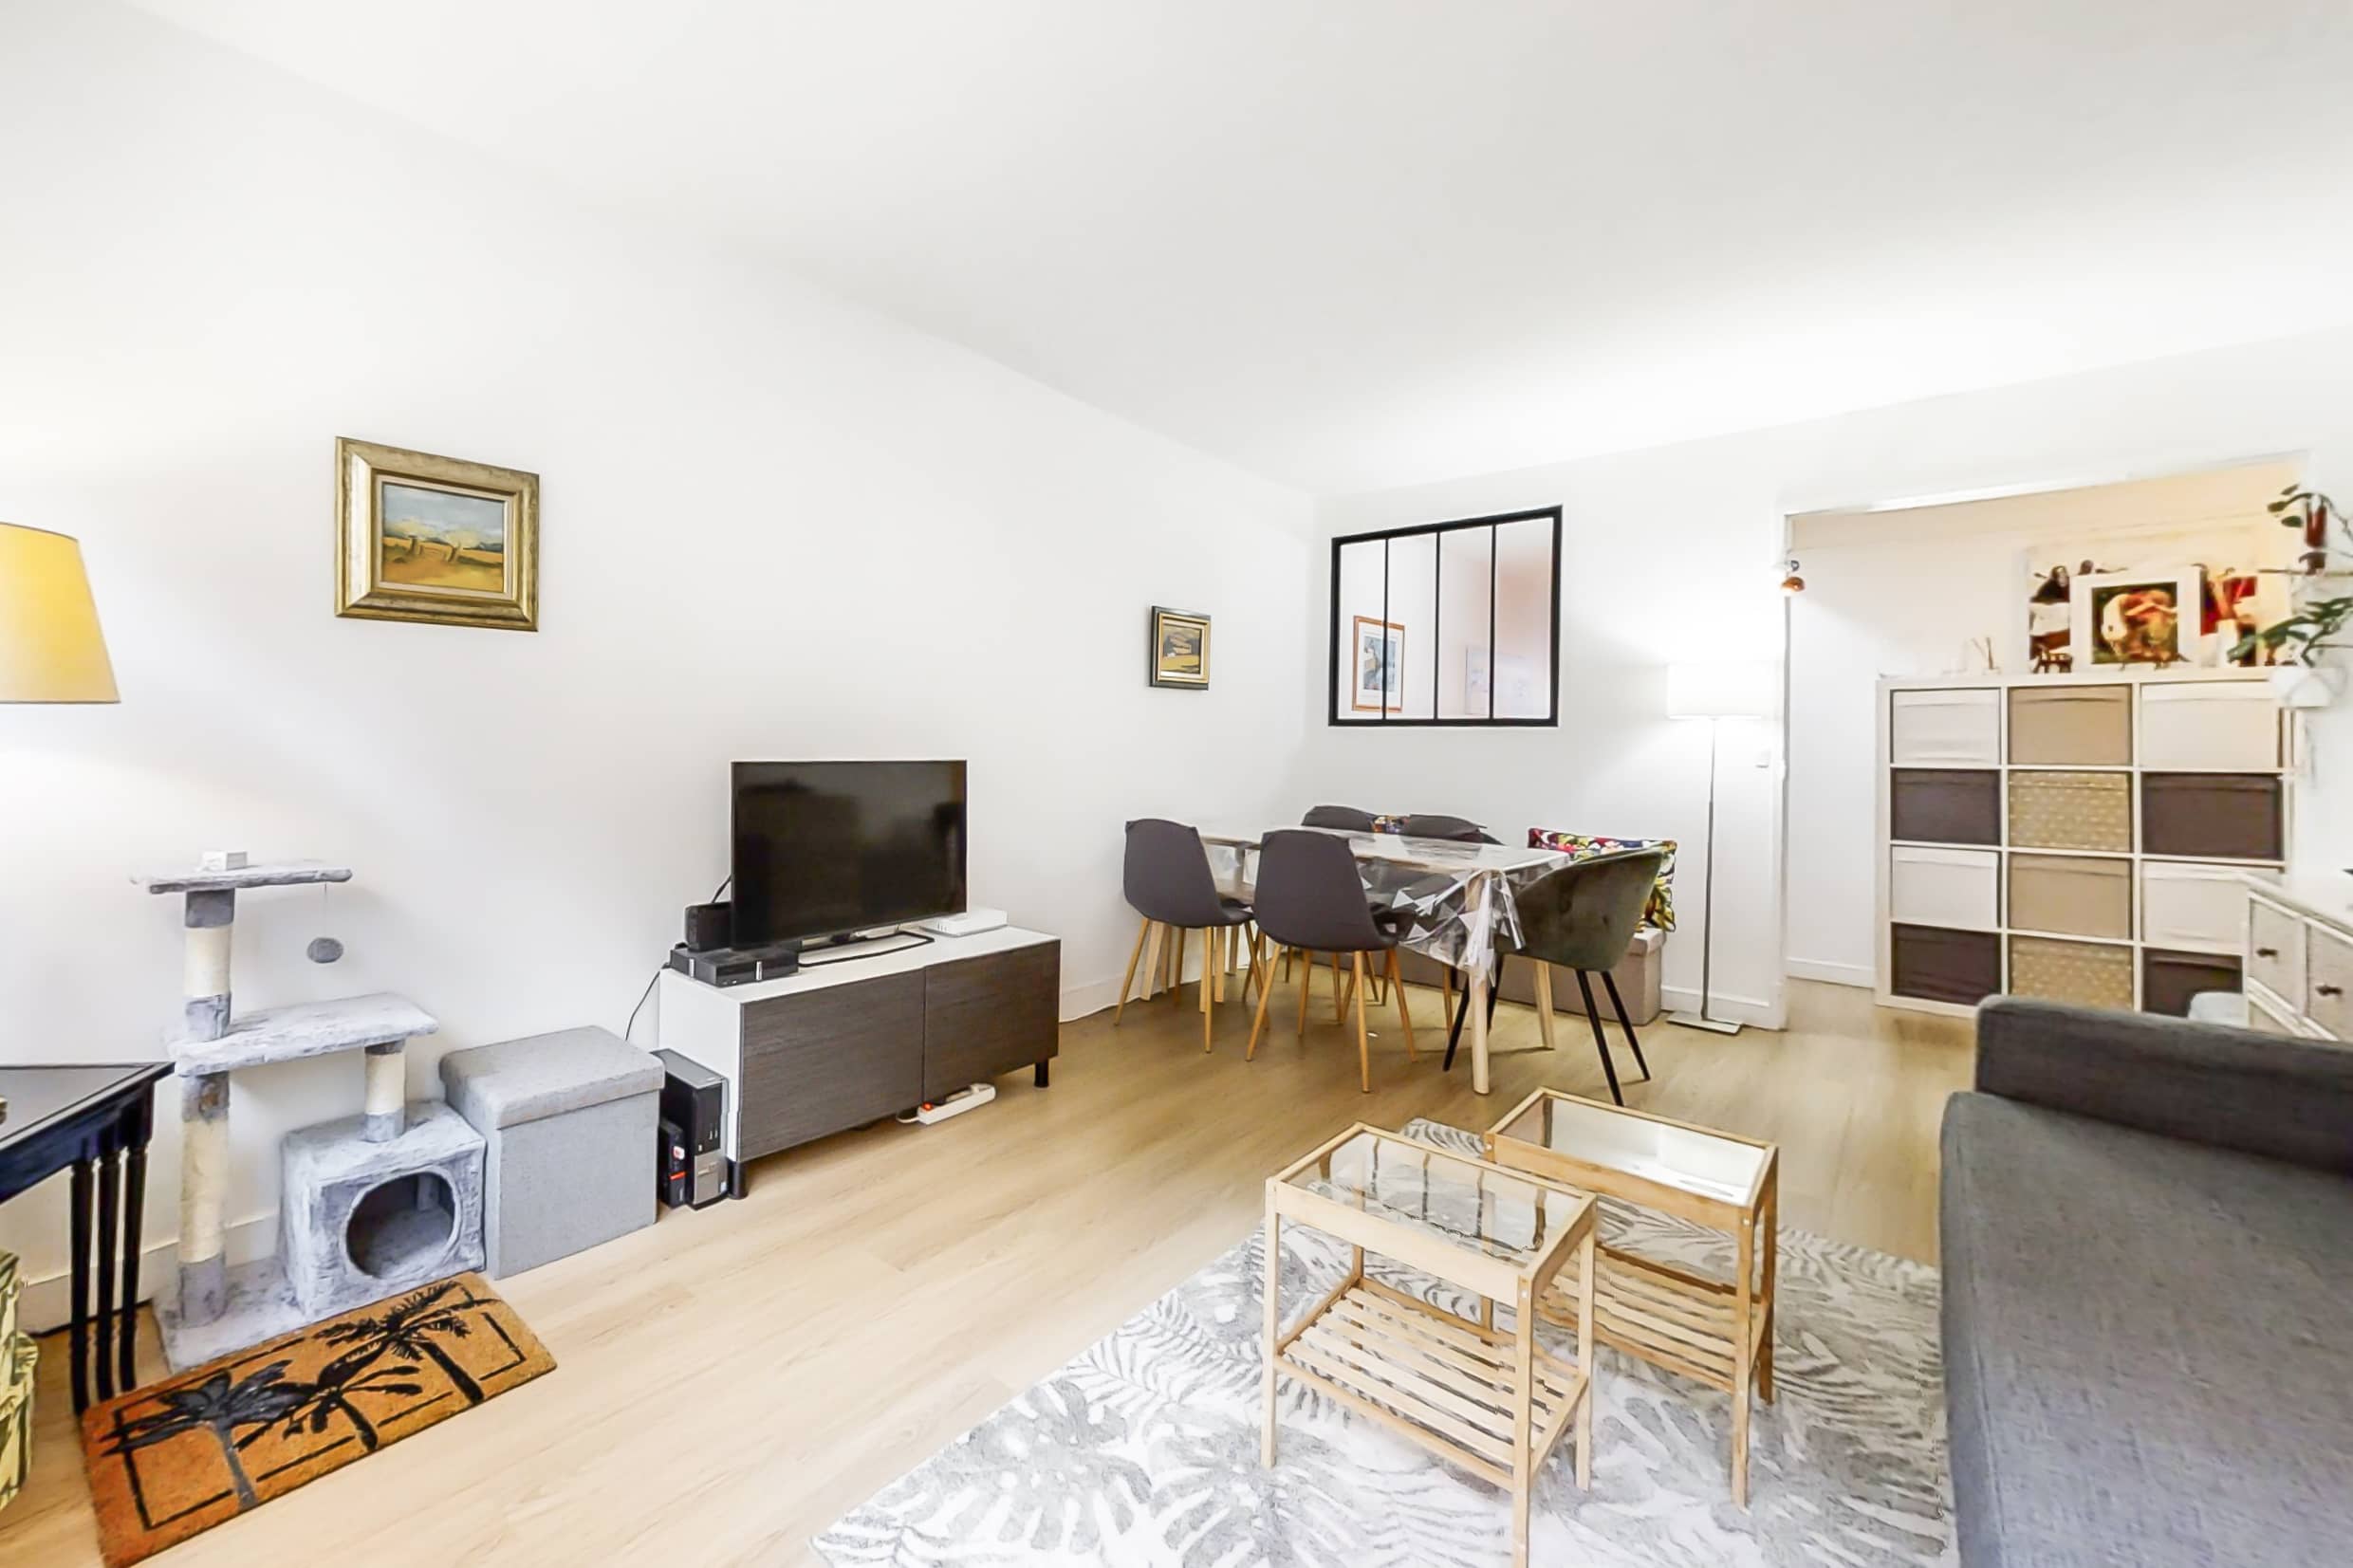 Appartement à vendre à Boulogne-Billancourt en rez-de-chaussée estimation gratuite Pascal NICOLE